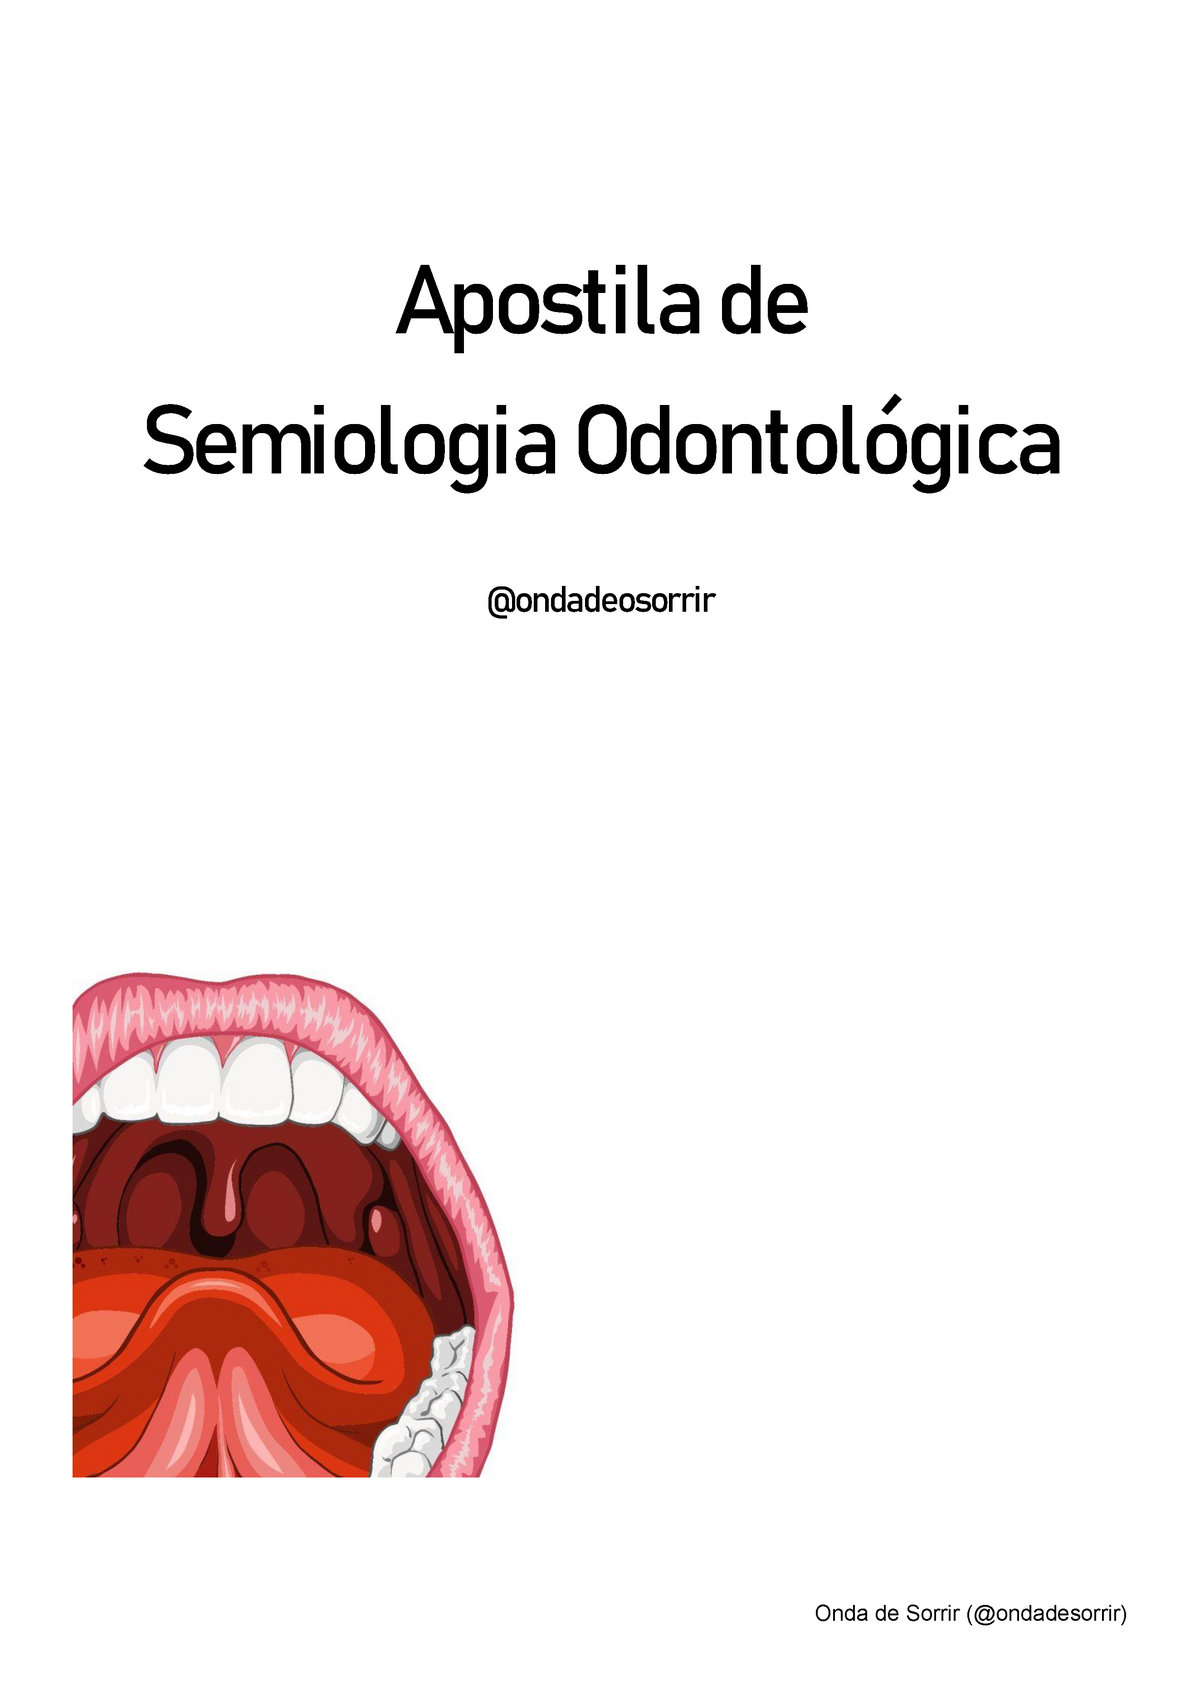 Anamnese Cadernão de Semiologia - Conceitos de semiologia